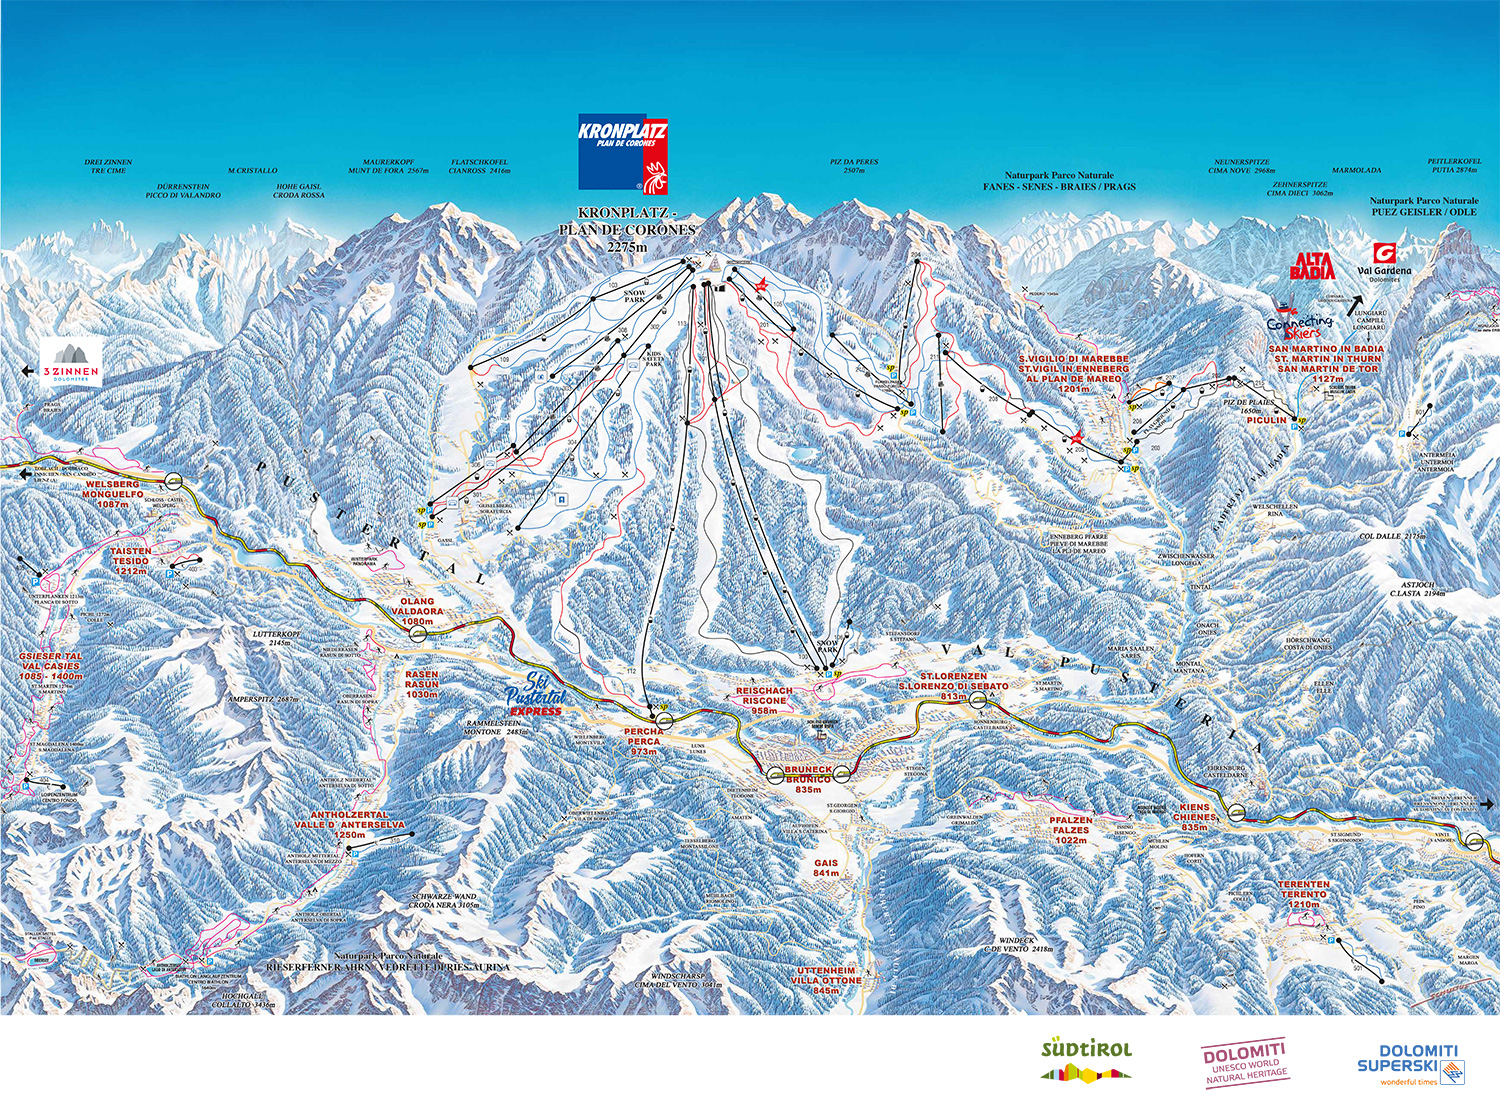 Skiline - General info about ski resort Kronplatz